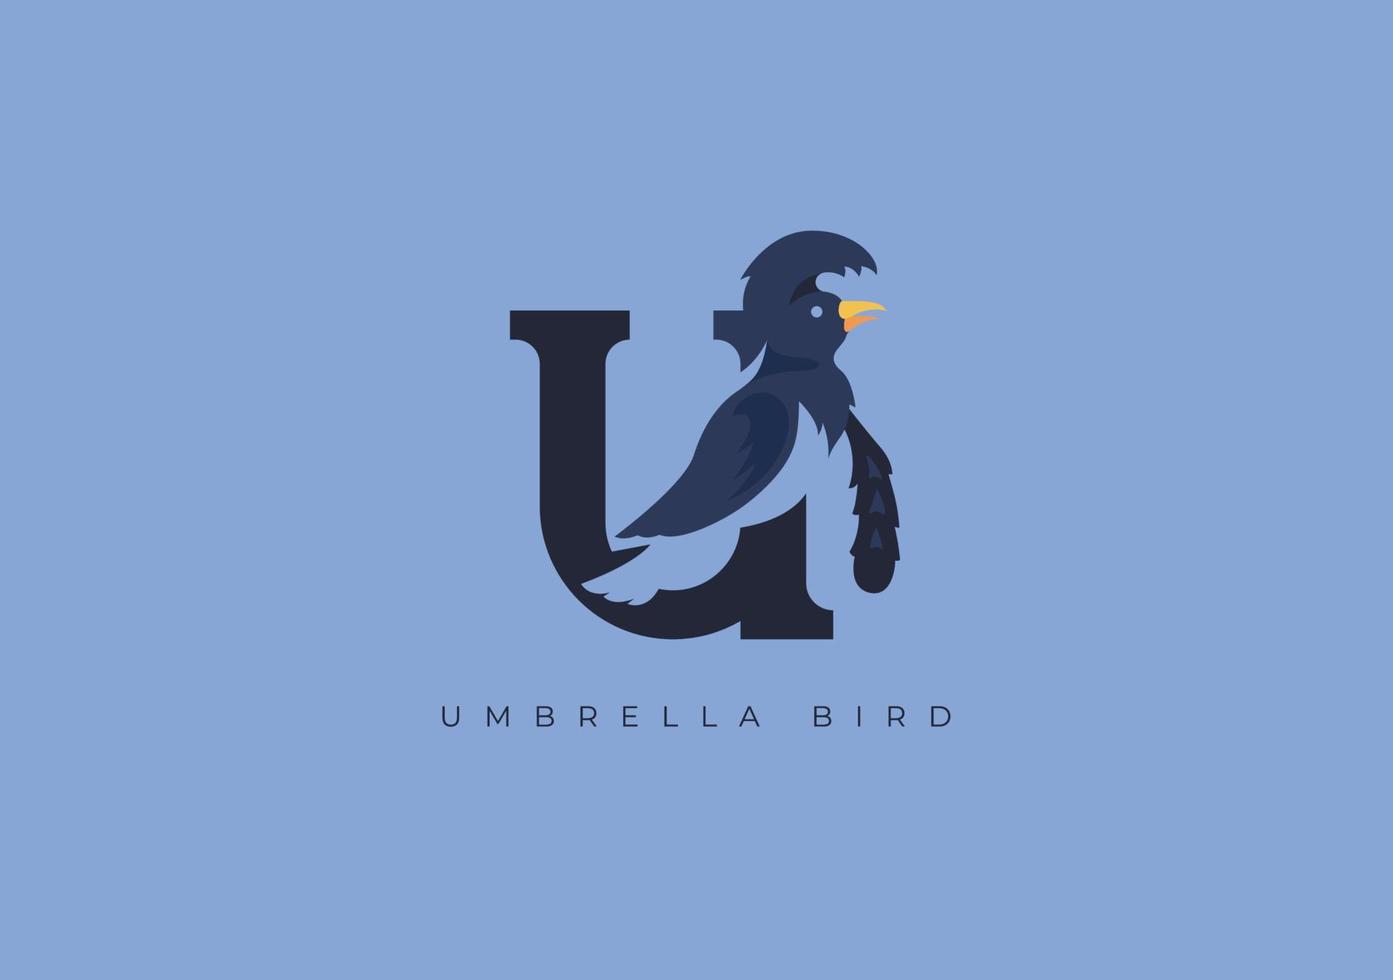 UMBRELLA BIRD MONOGRAM, VECTOR LOGO